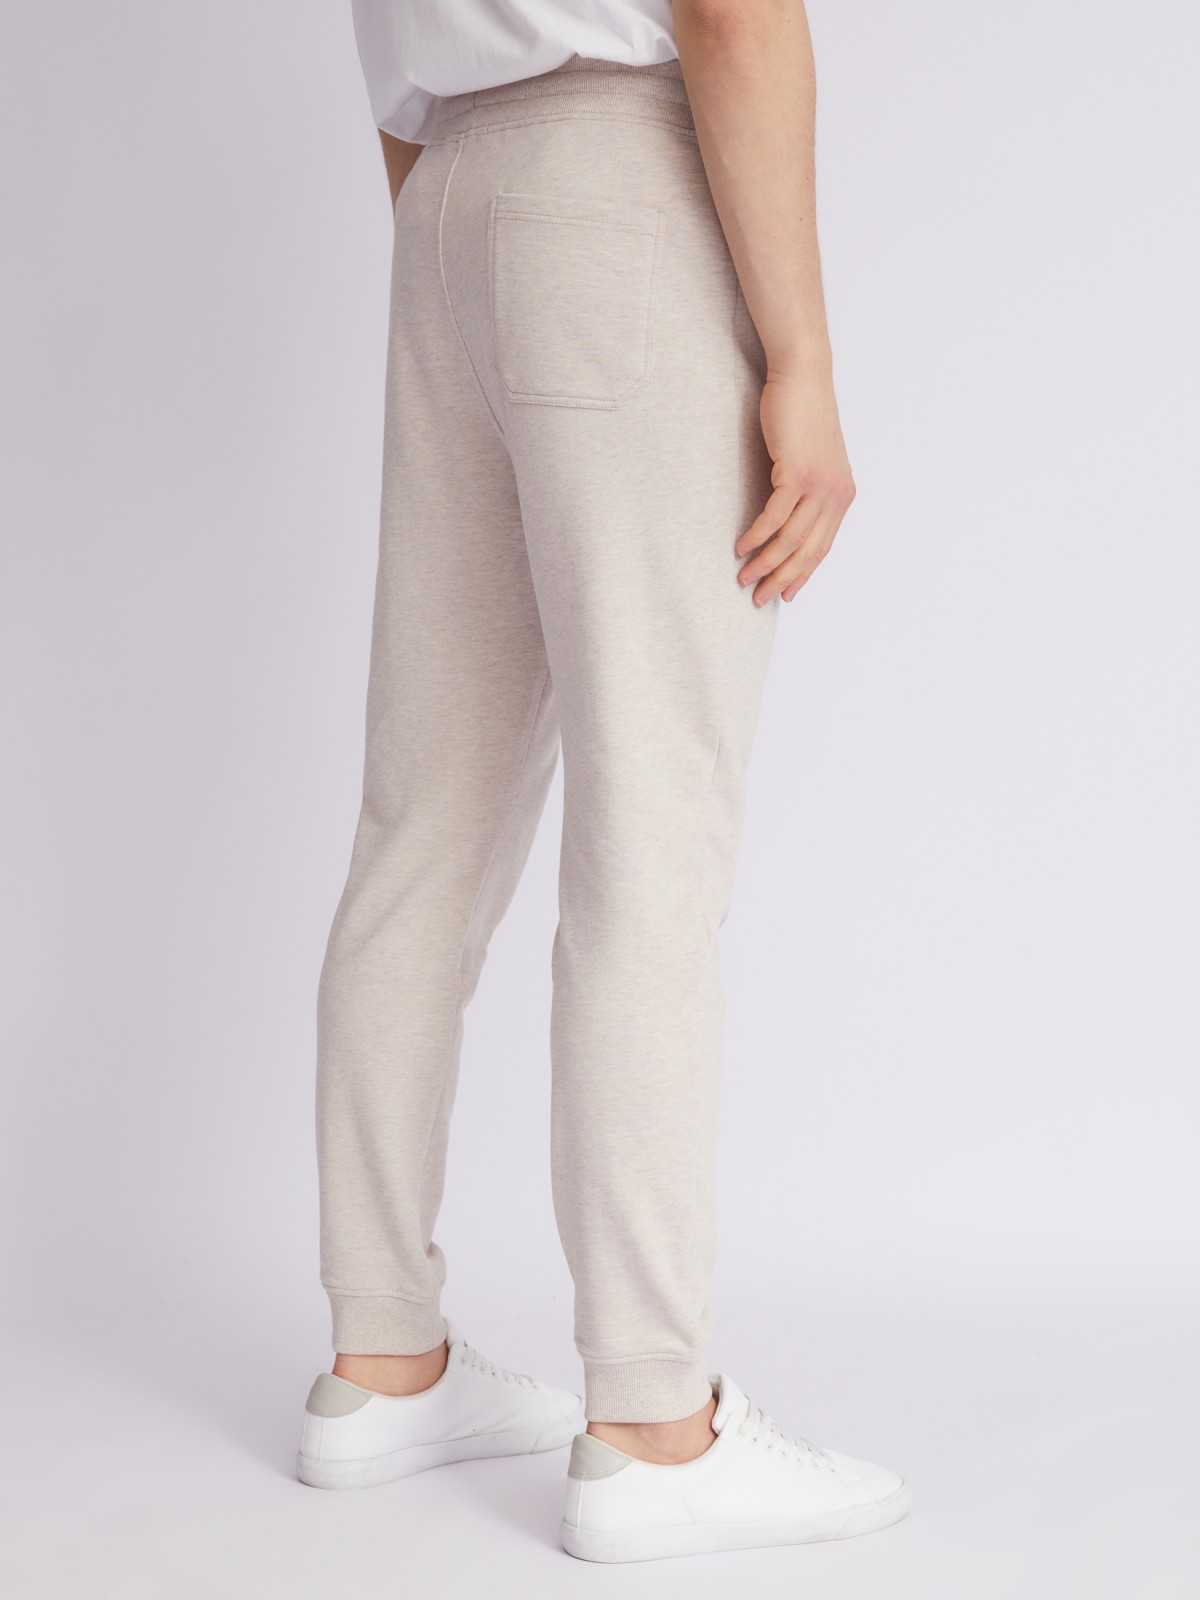 Трикотажные брюки-джоггеры zolla 21321761U042, цвет бежевый, размер XS - фото 5